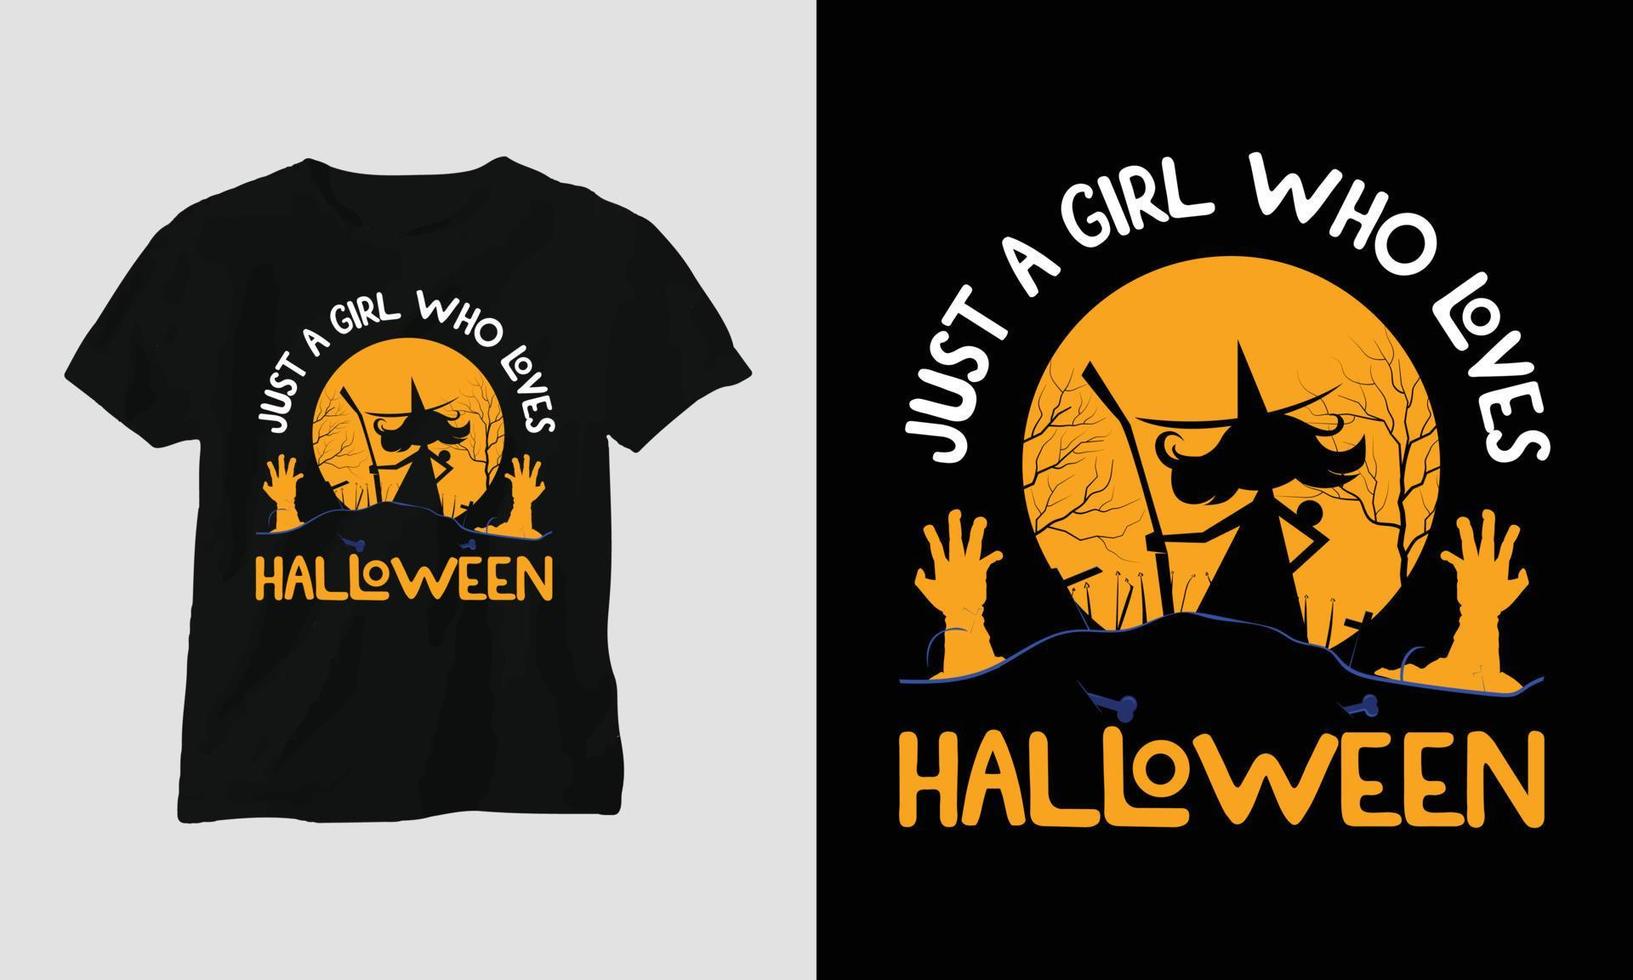 bara en tjej som älskar halloween t-shirt vektor